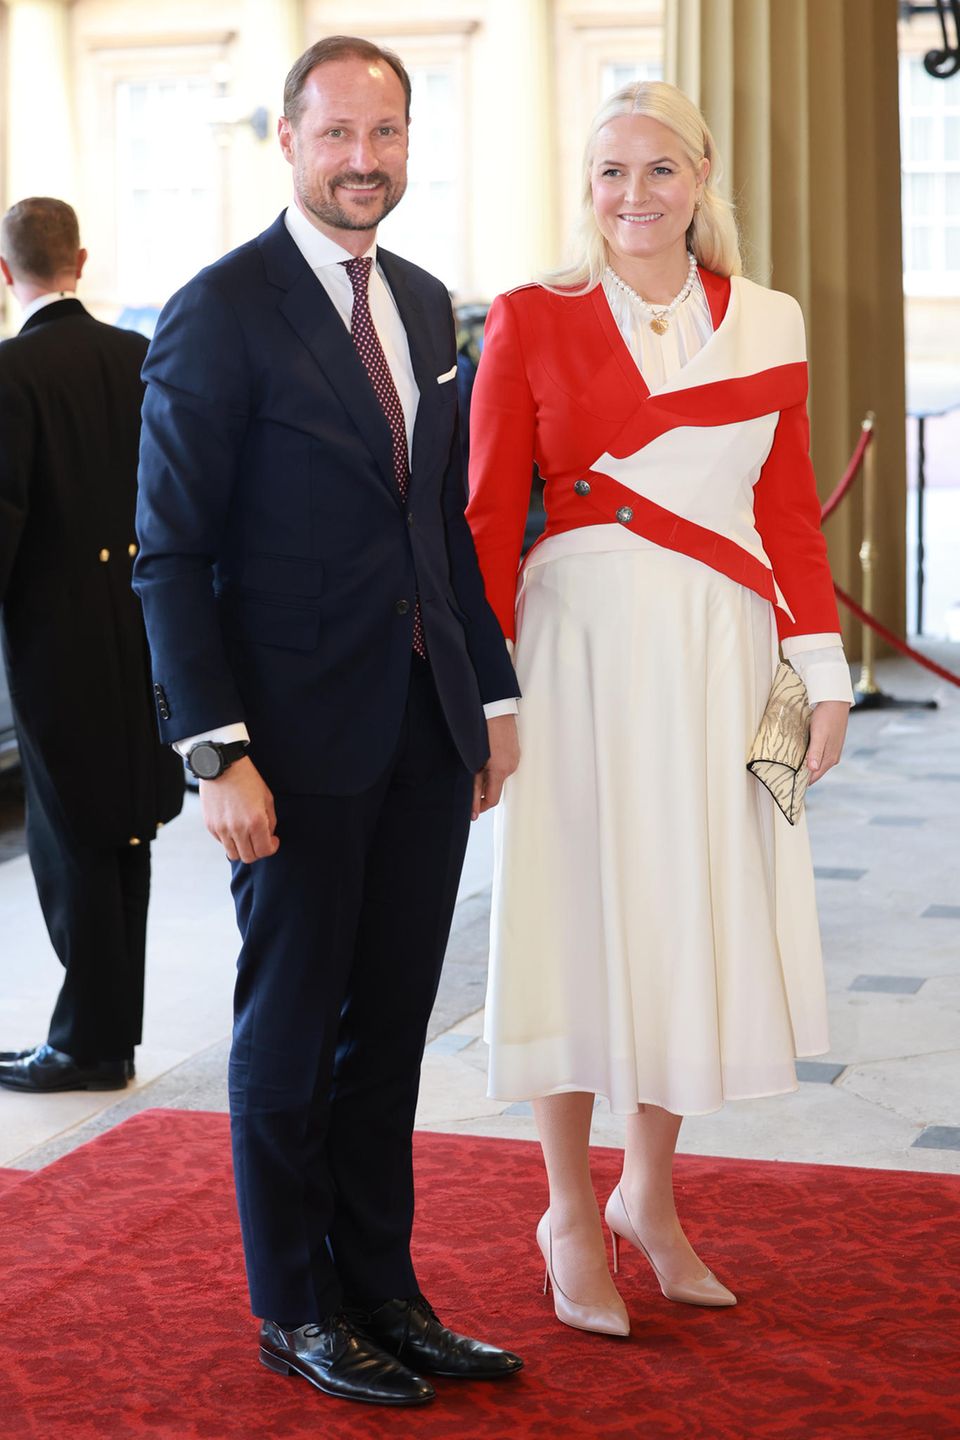 Prinzessin Mette-Marit verzaubert neben ihrem Mann Prinz Haakon in einem cremefarbenen Kleid mit leuchtend rotem Jäckchen.